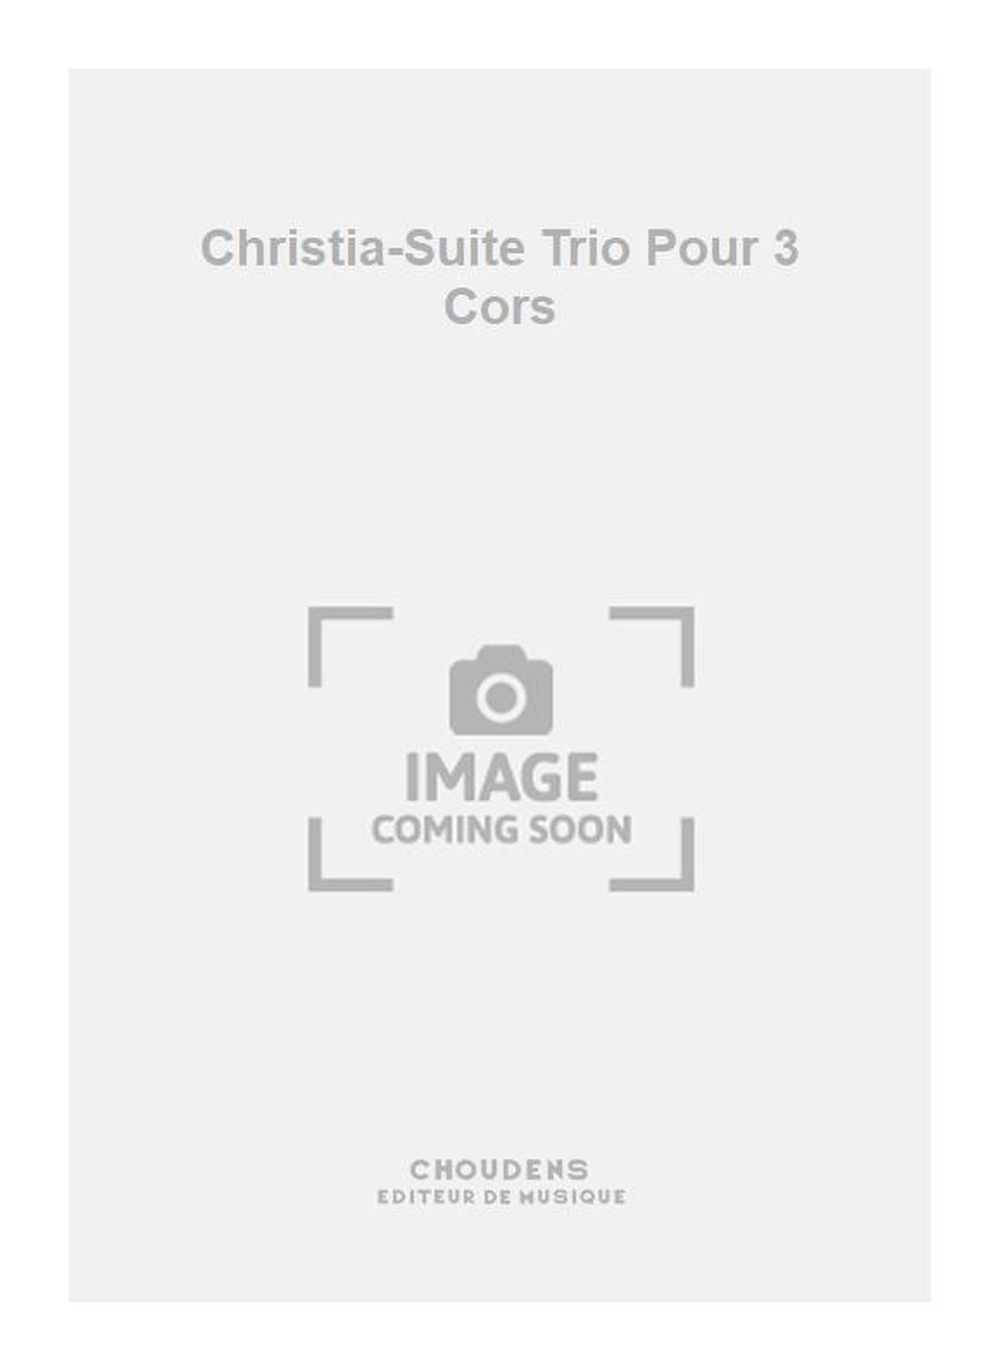 Dardenne: Christia-Suite Trio Pour 3 Cors